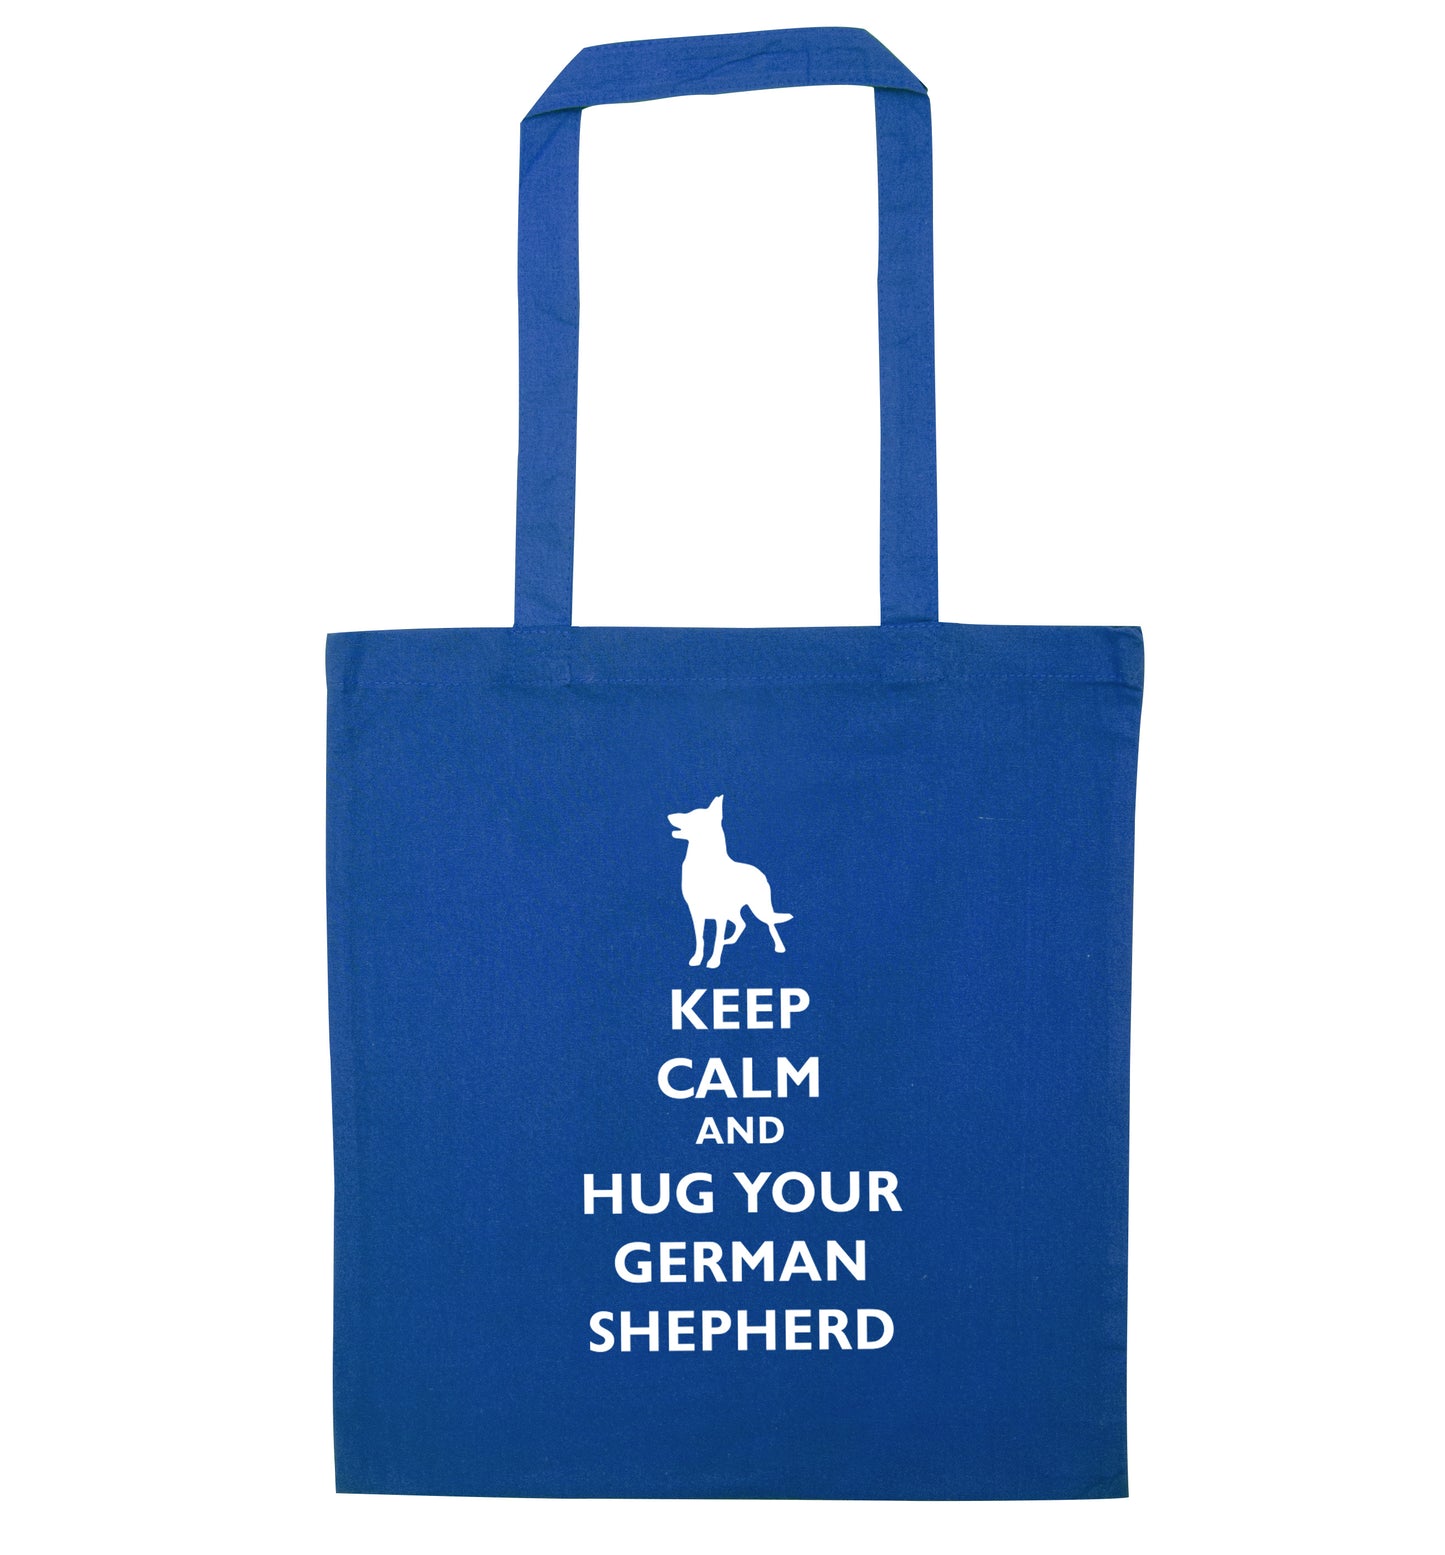 Keep calm and hug your german shepherd blue tote bag